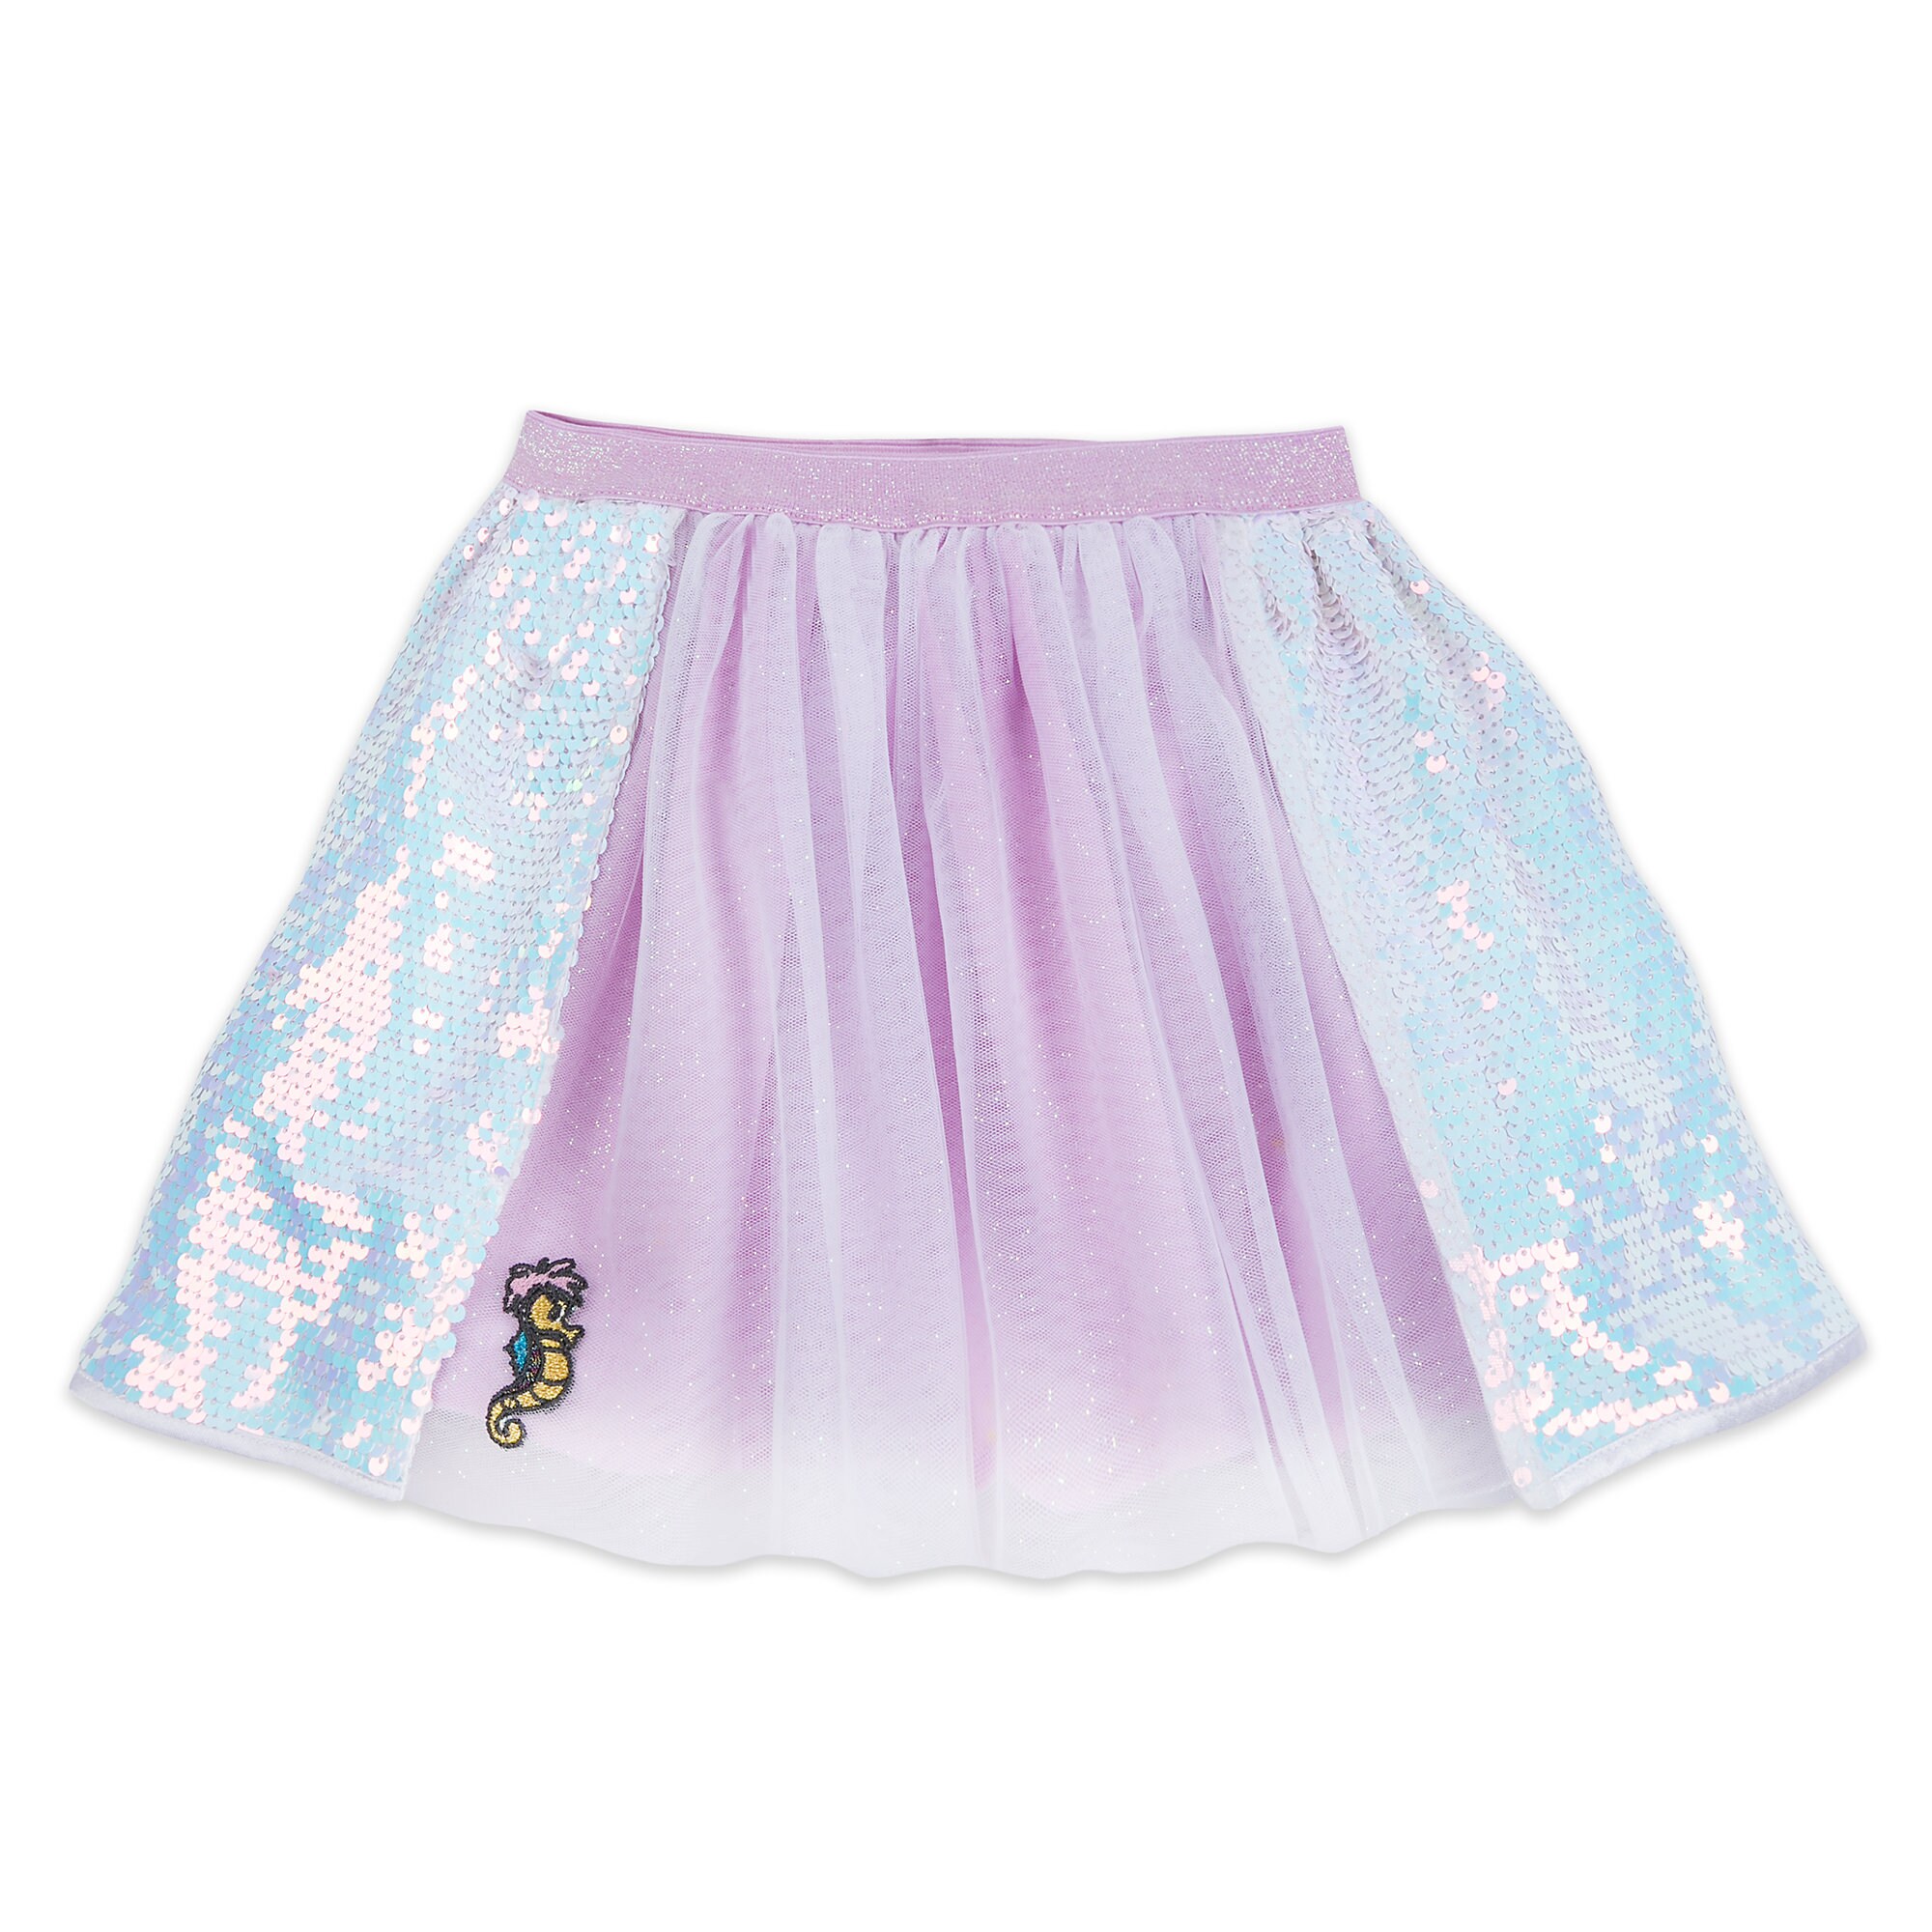 Ariel Shirt and Skirt Set for Girls